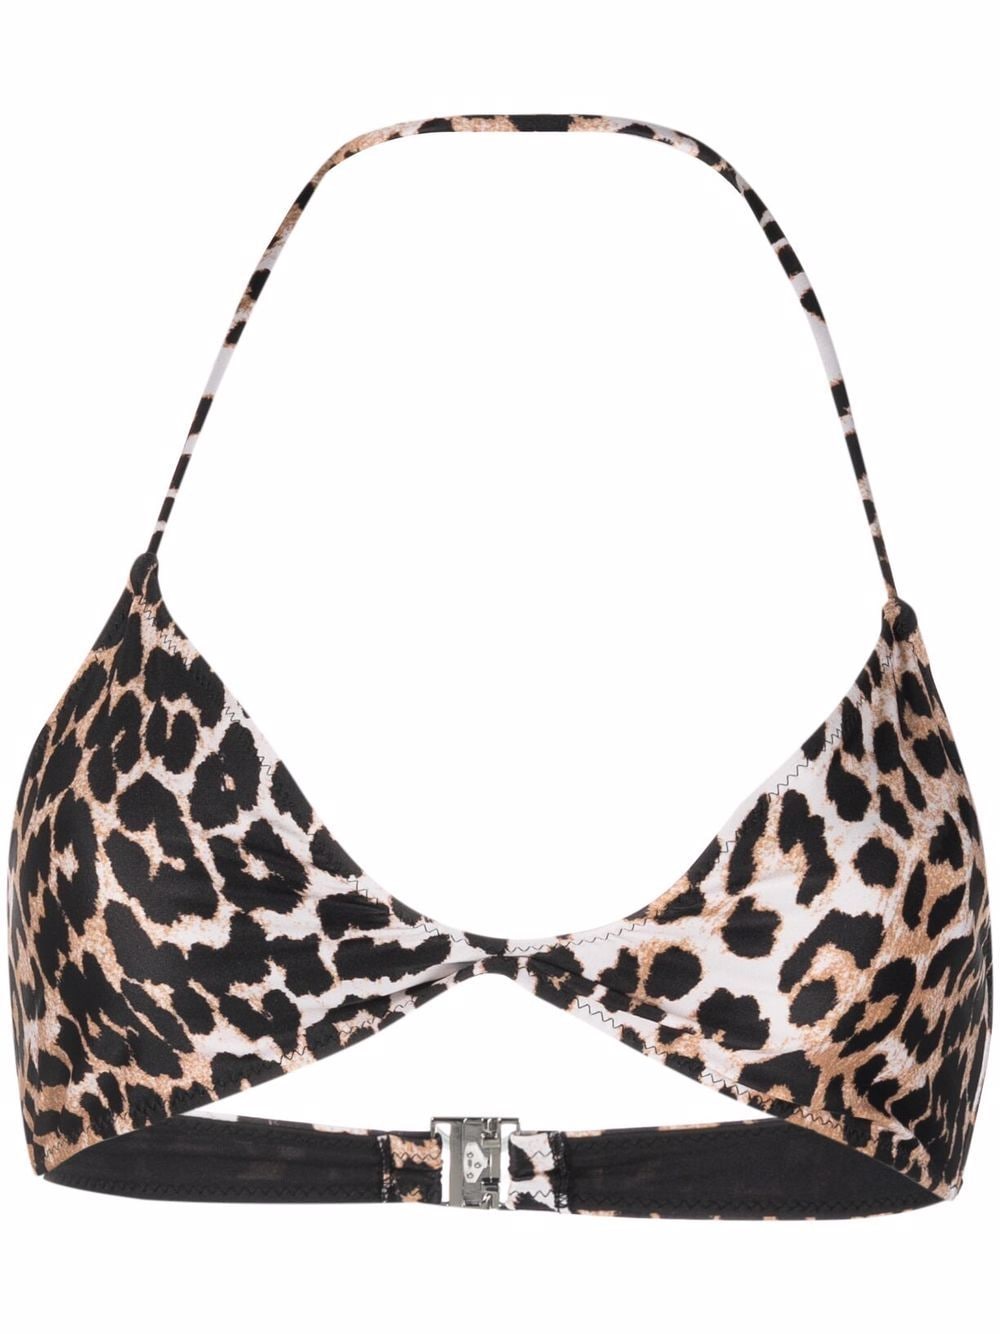 GANNI leopard-print twisted bikini top - Neutrals